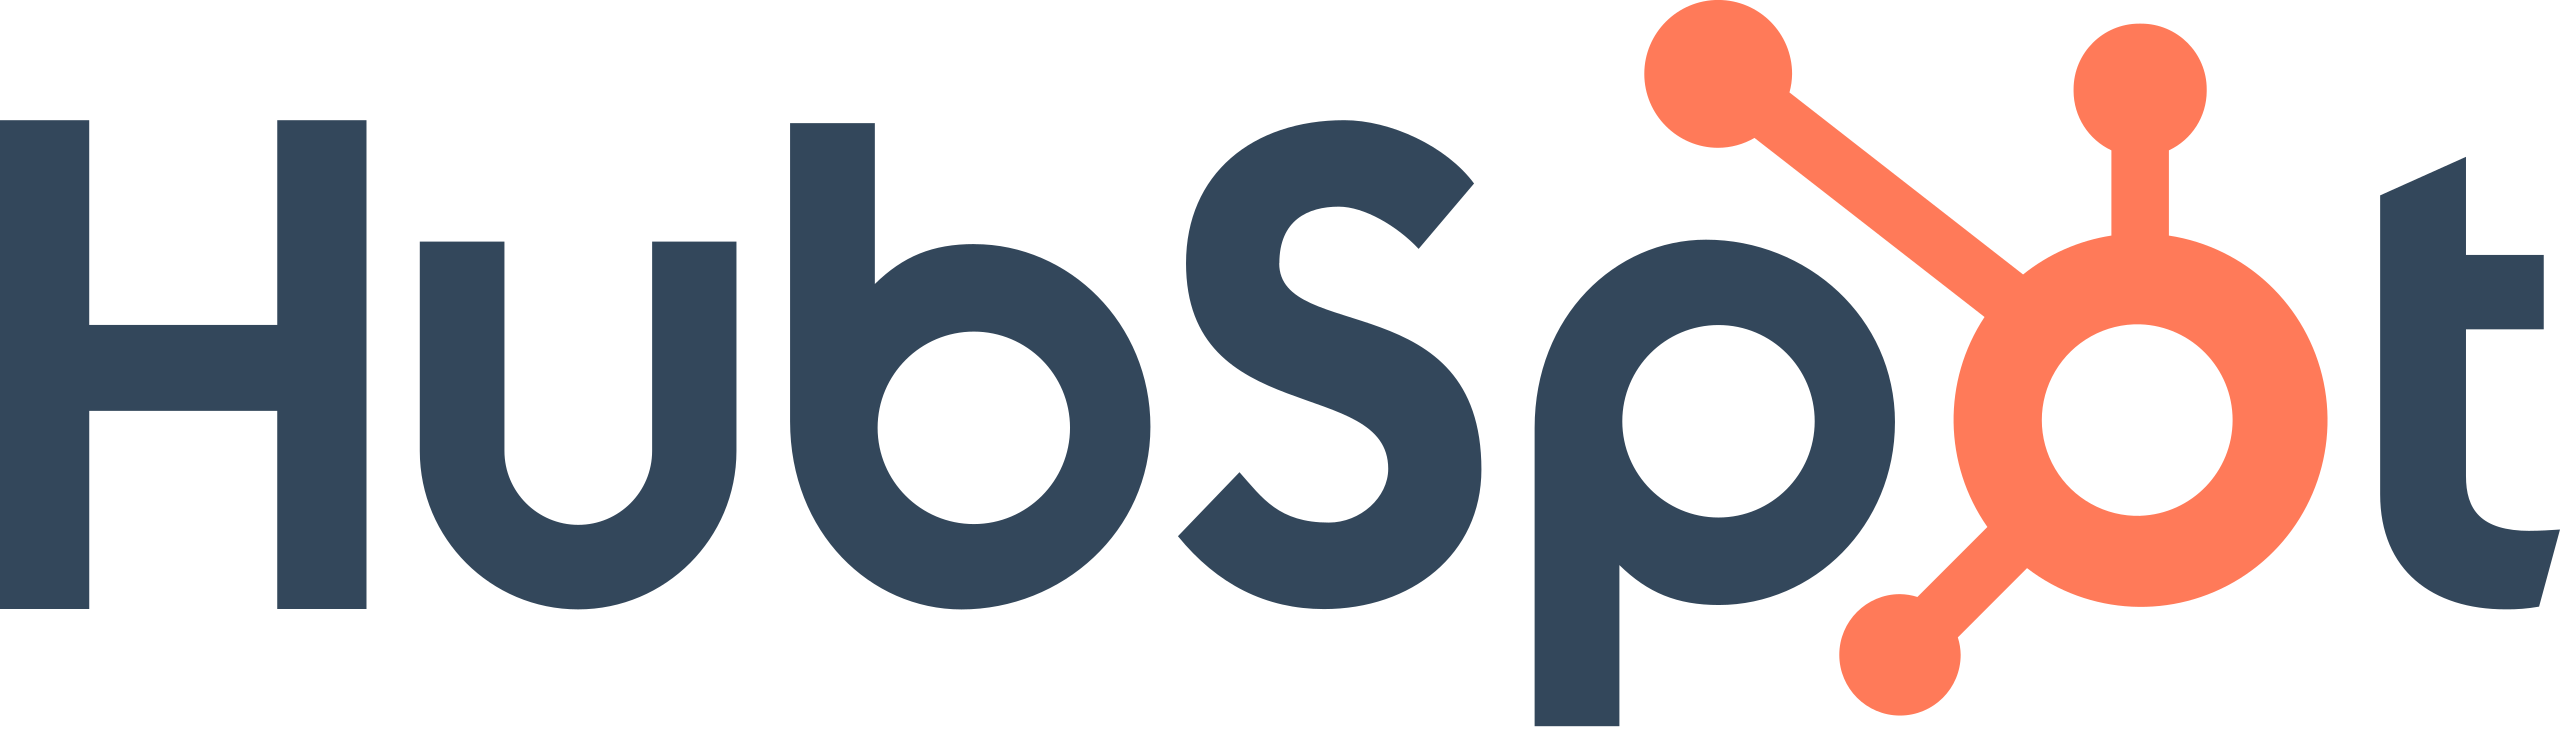 Hubspot logo software development